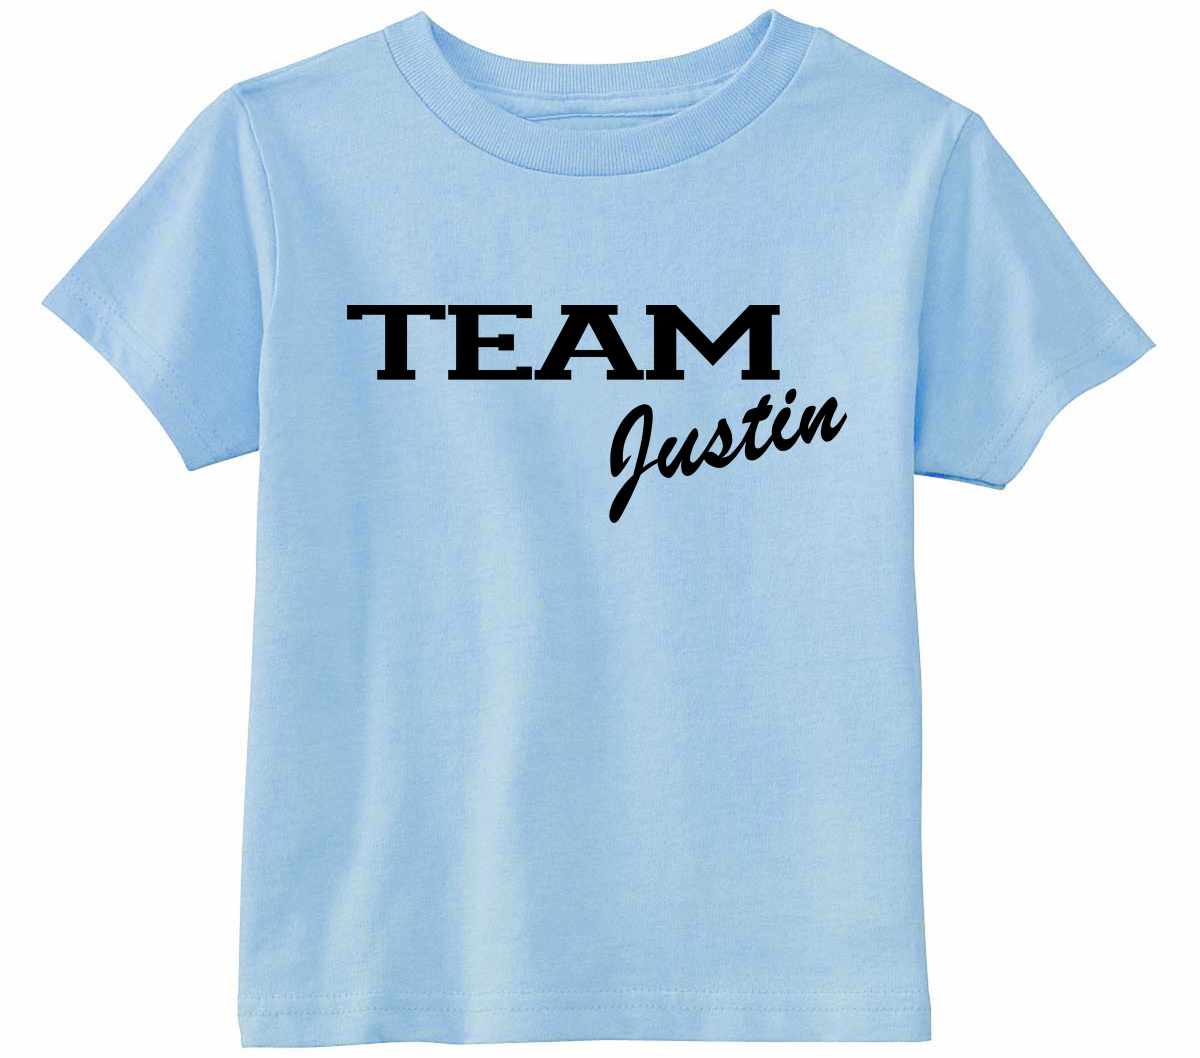 Team Justin Infant/Toddler  (#635-7)